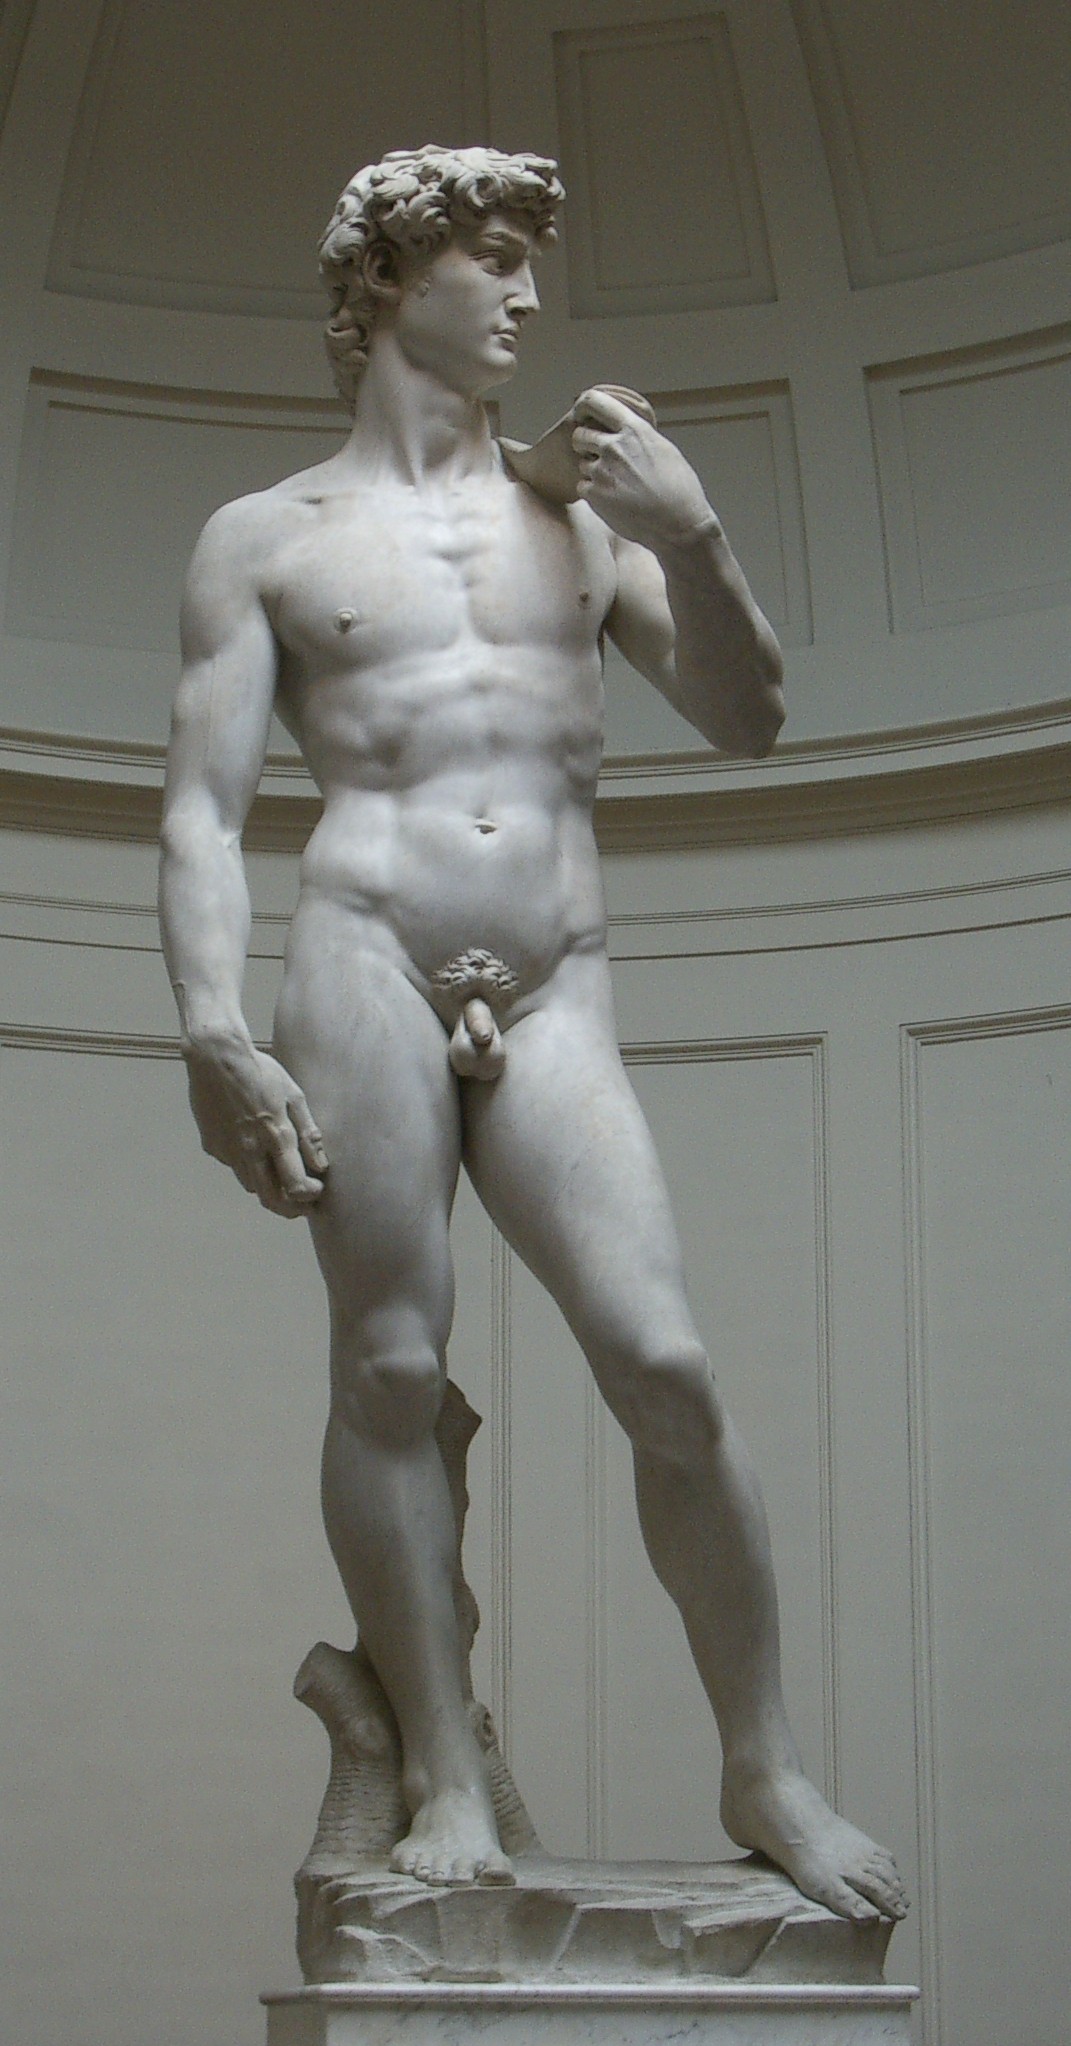 David by Michelangelo di Lodovico Buonarroti Simoni - 1501–04 - 4,34 x 517 m Accademia di Belle Arti di Firenze